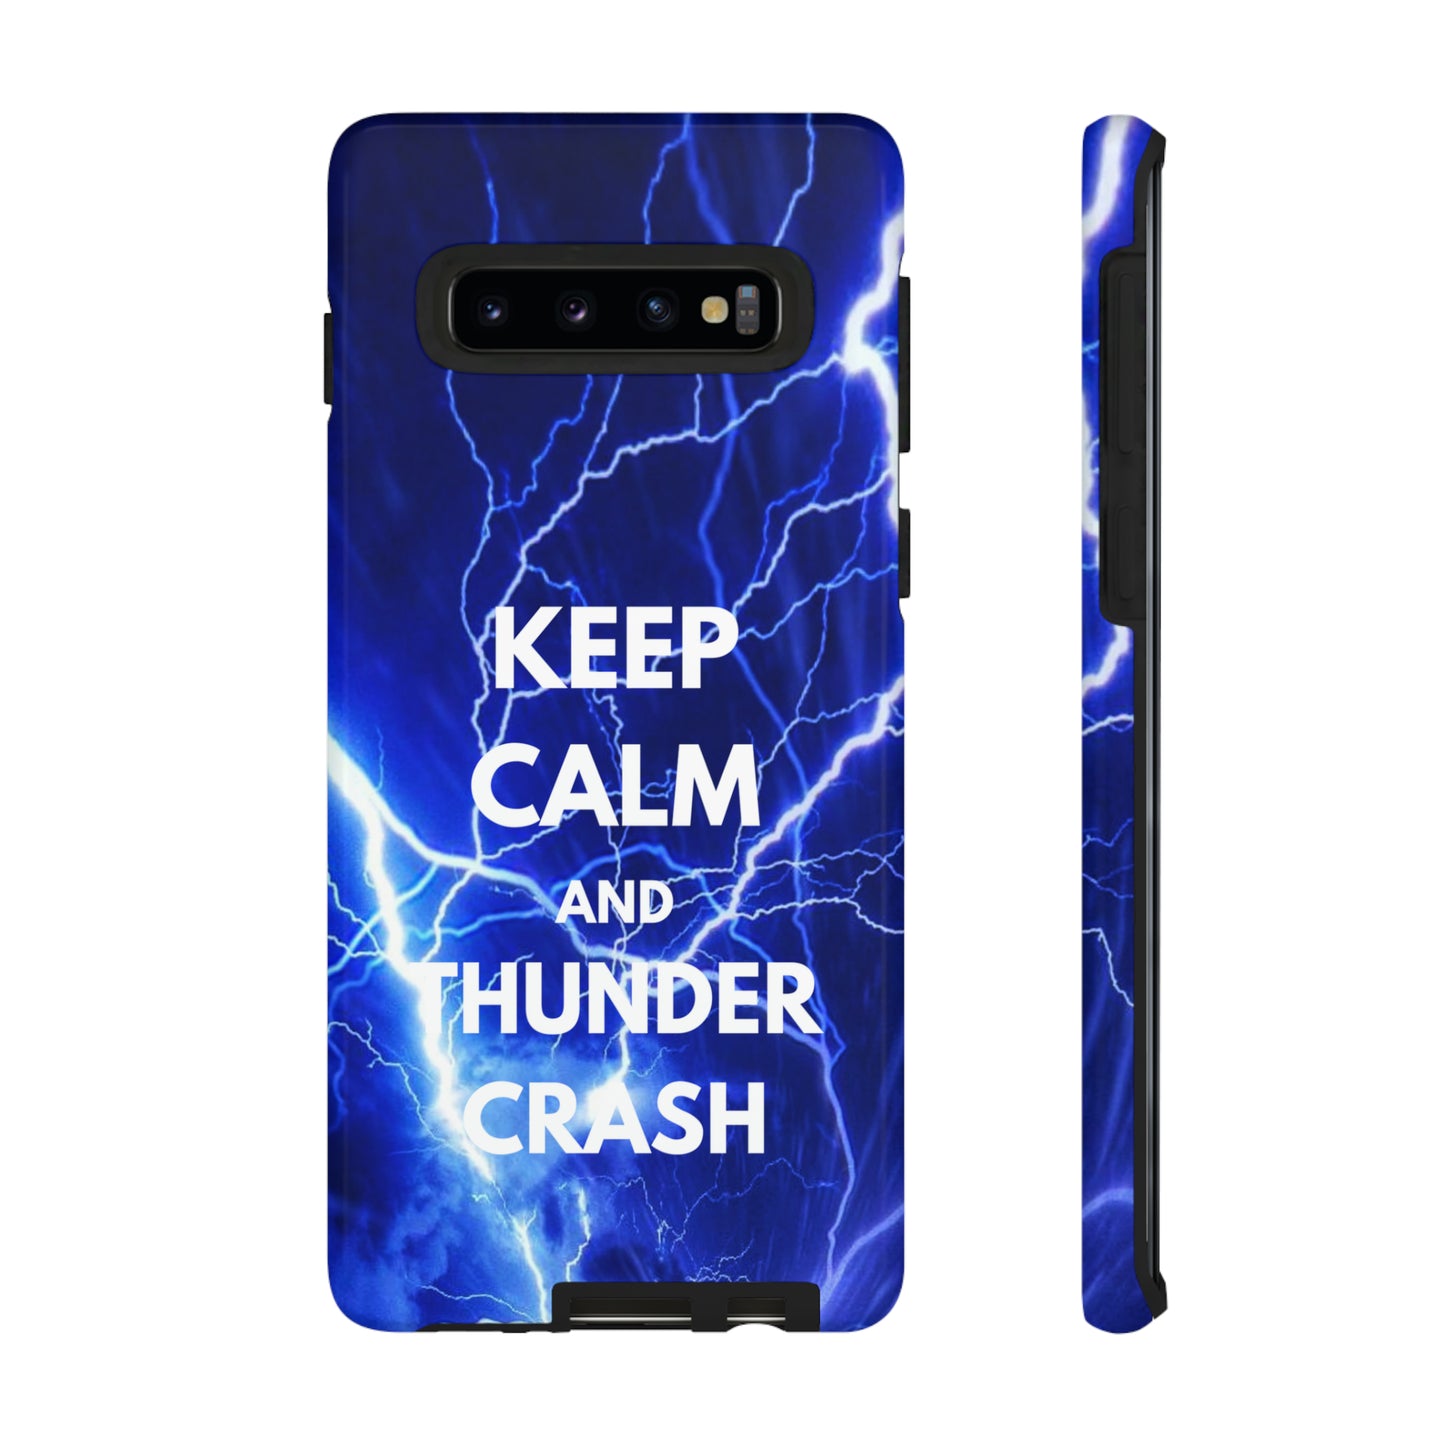 Keep Calm and Thunder Crash Destiny 2 Themed Phone Case